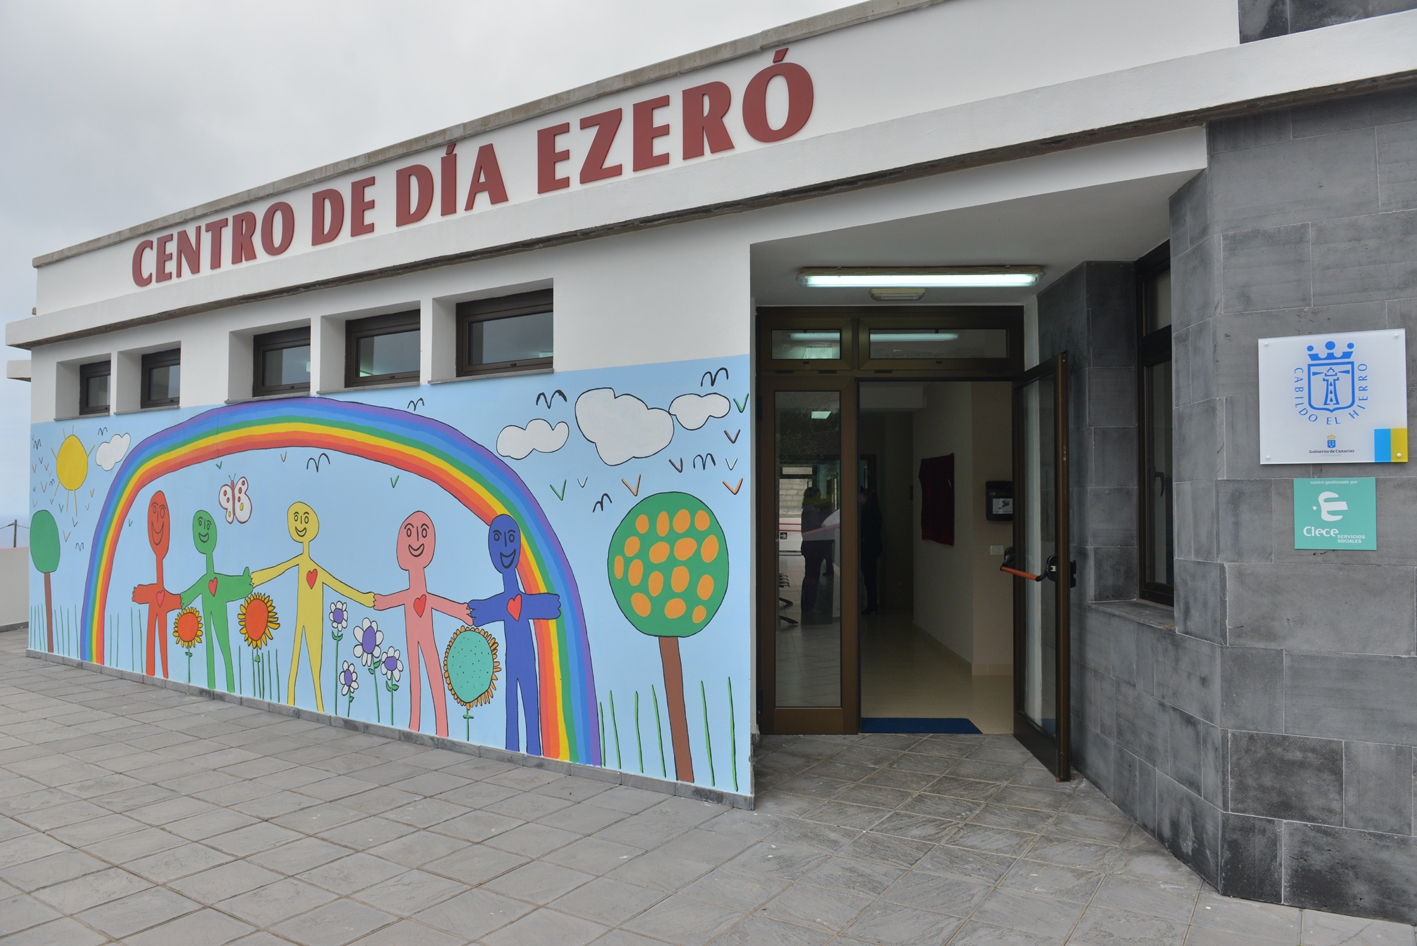 El Cabildo de El Hierro saca a concurso la gestión del centro de día “Ezeró” para personas con discapacidad intelectual